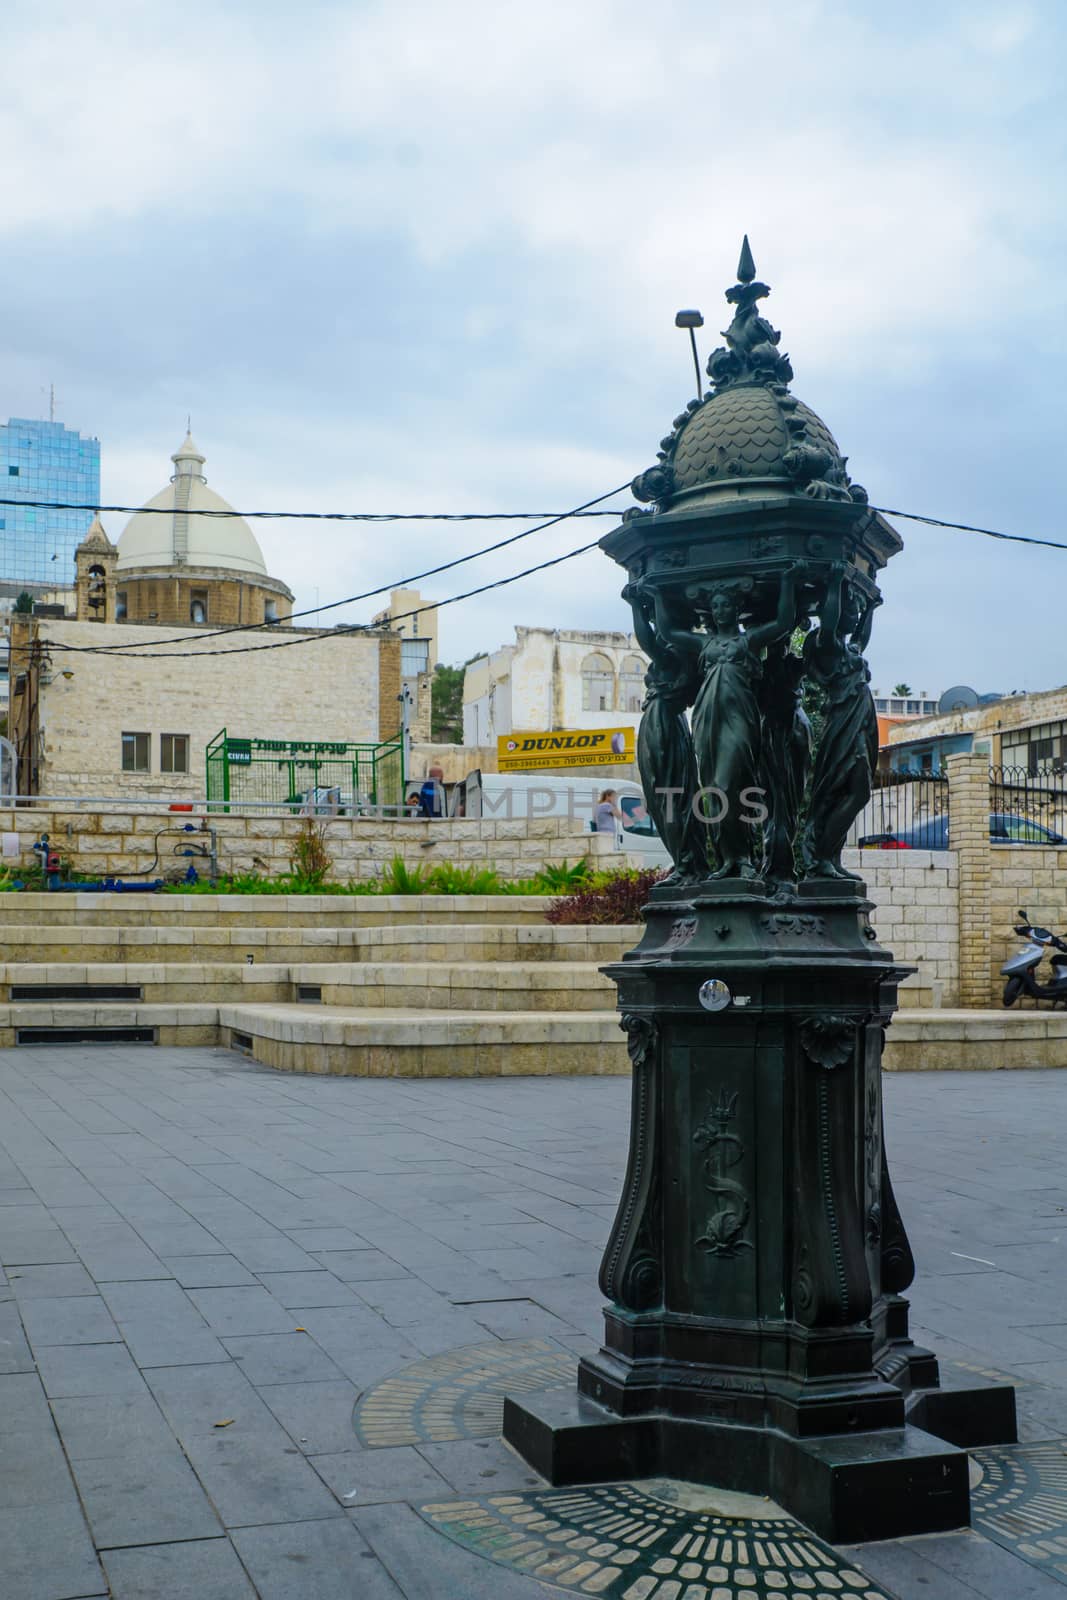 Paris Square in Haifa by RnDmS